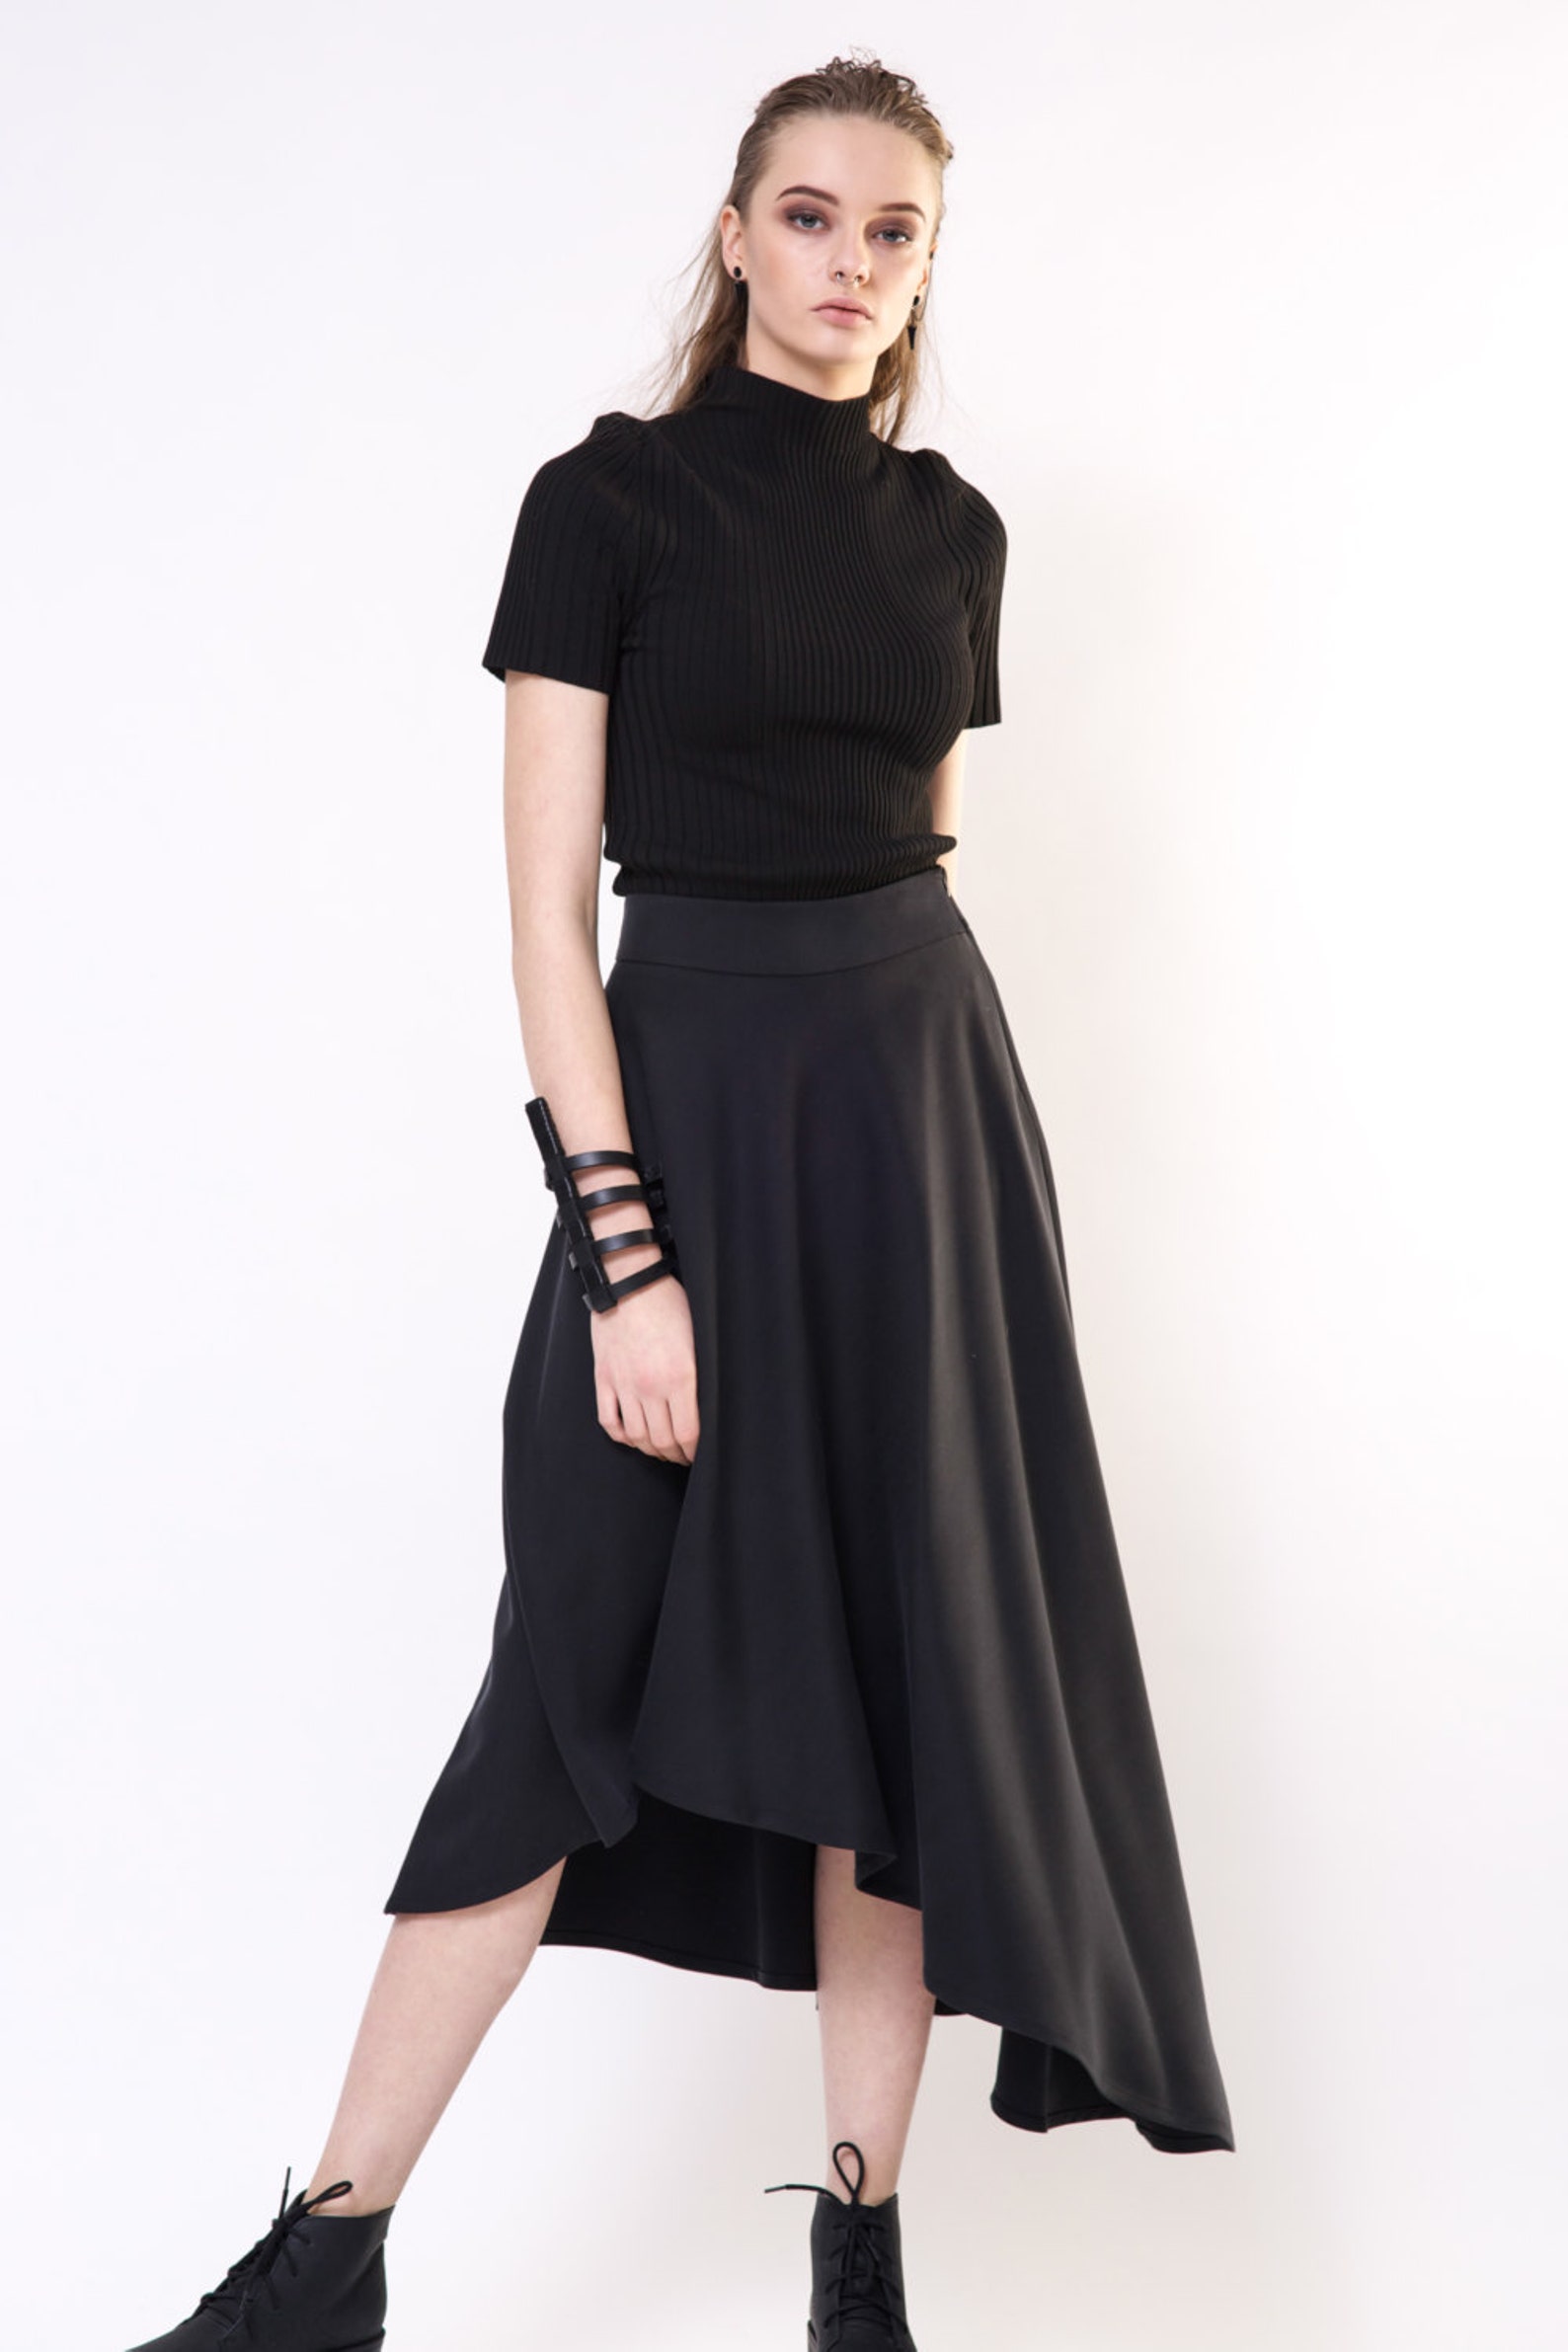 Hight Waist Skirt / Aesthetic Clothing / Midi Skirt / Black - Etsy UK